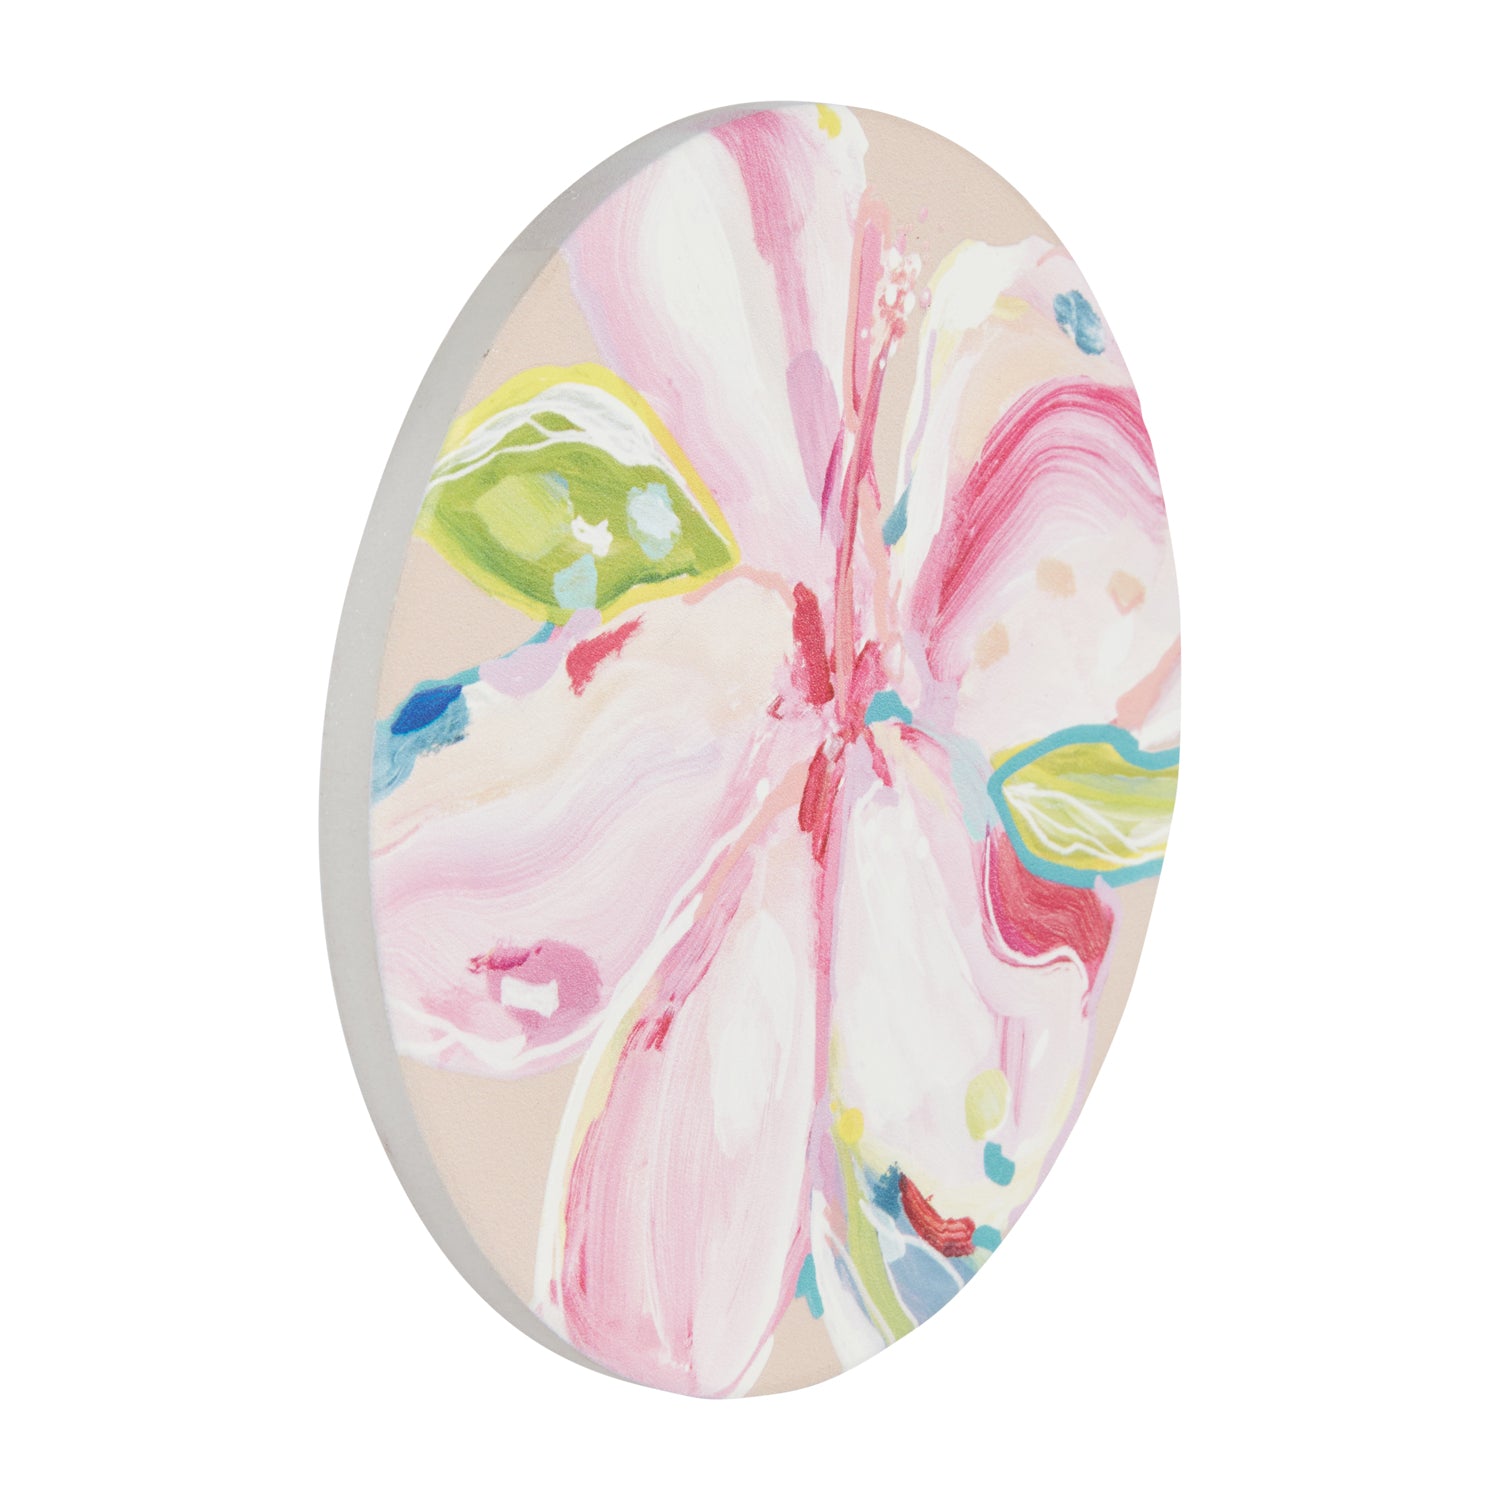 Splosh - Talulah - Ceramic Coaster - Pink Flower